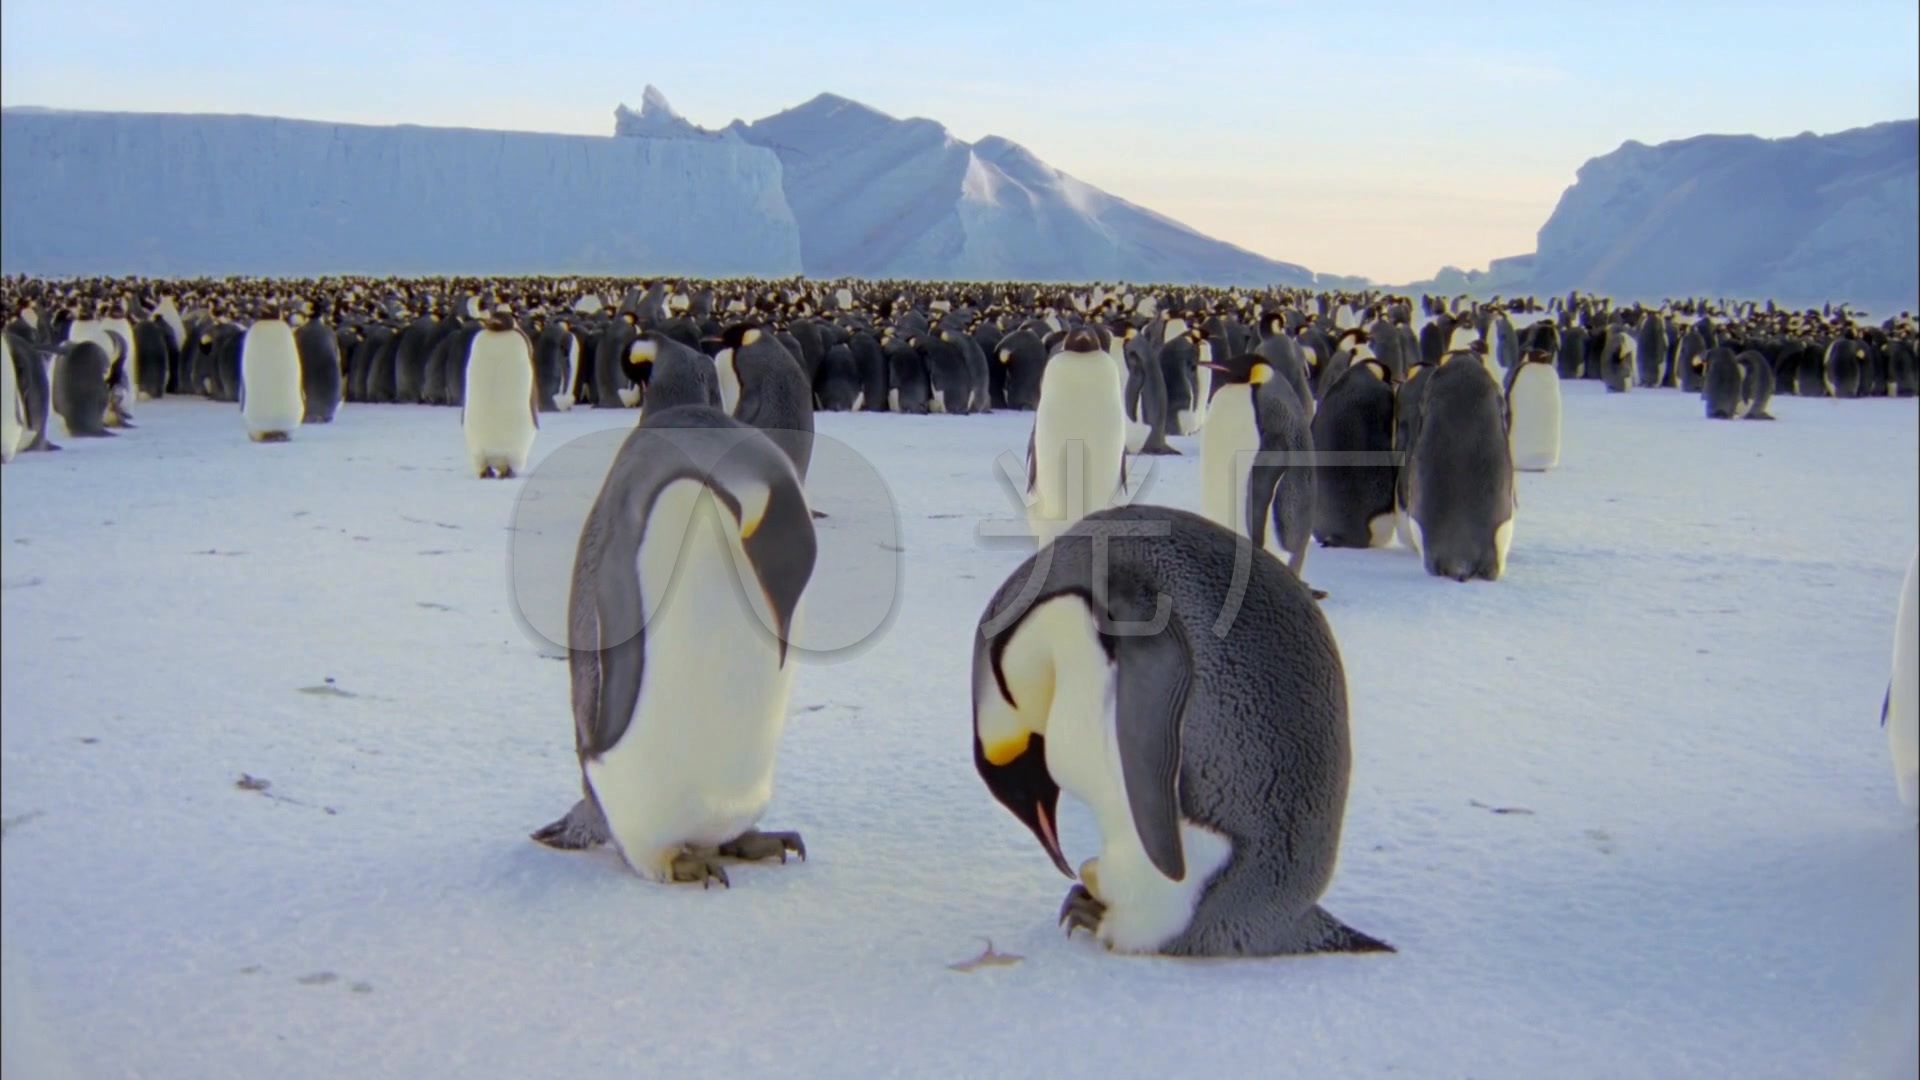 企鹅特写南极冰天雪地美景壮观